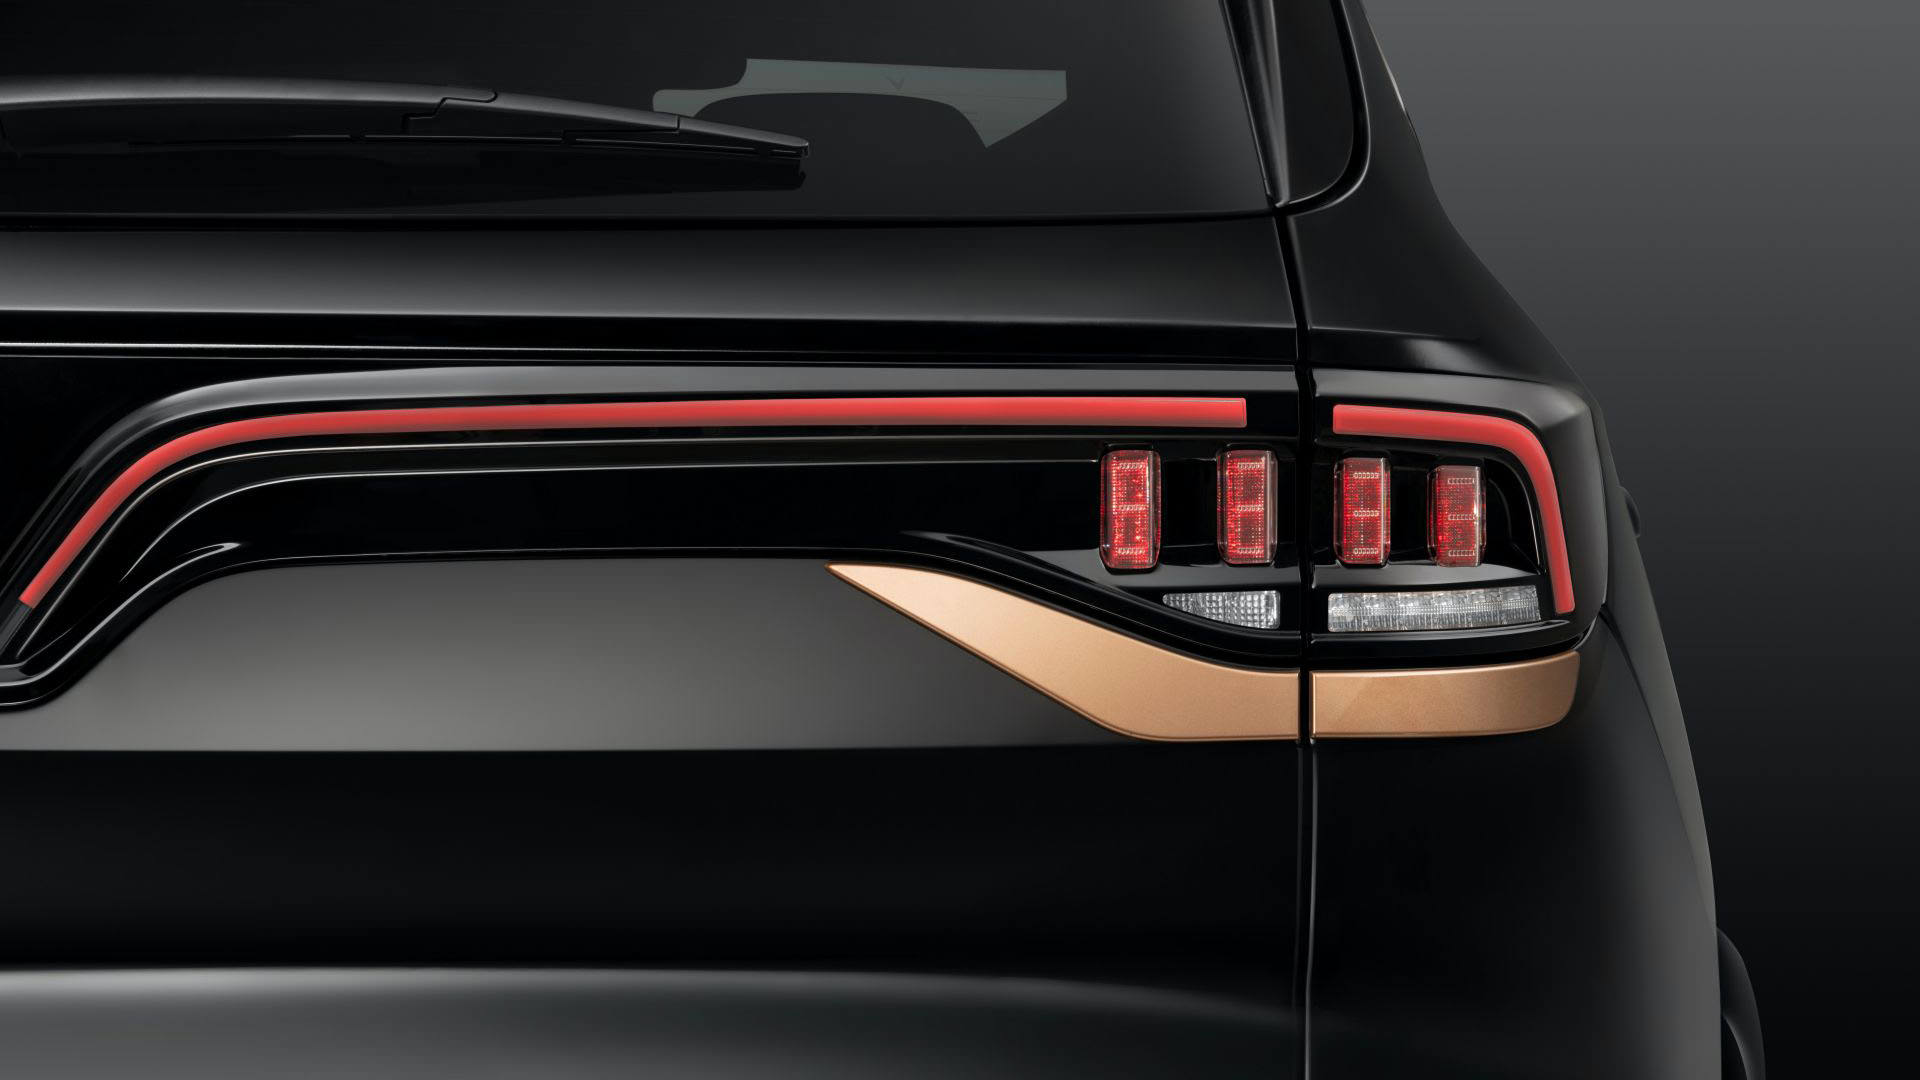 نمای چراغ عقب شاسی بلند لوکس وین فست پرزیدنت / VinFast President Luxury SUV با رنگ مشکی